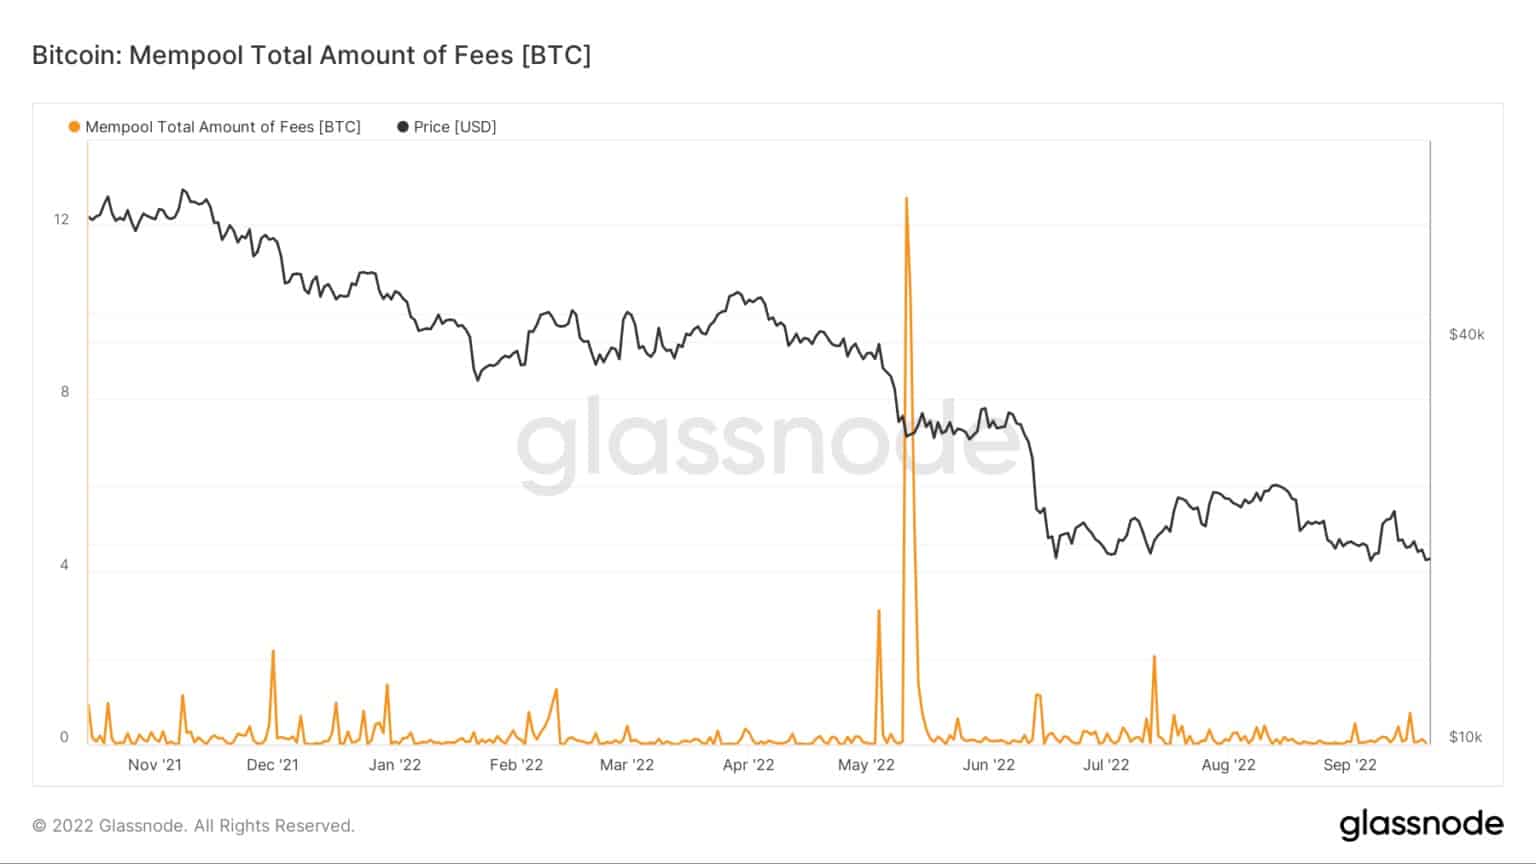 Łączna kwota opłat Bitcoin w mempoolu od listopada 2021 do września 2022 (Źródło: Glassnode)